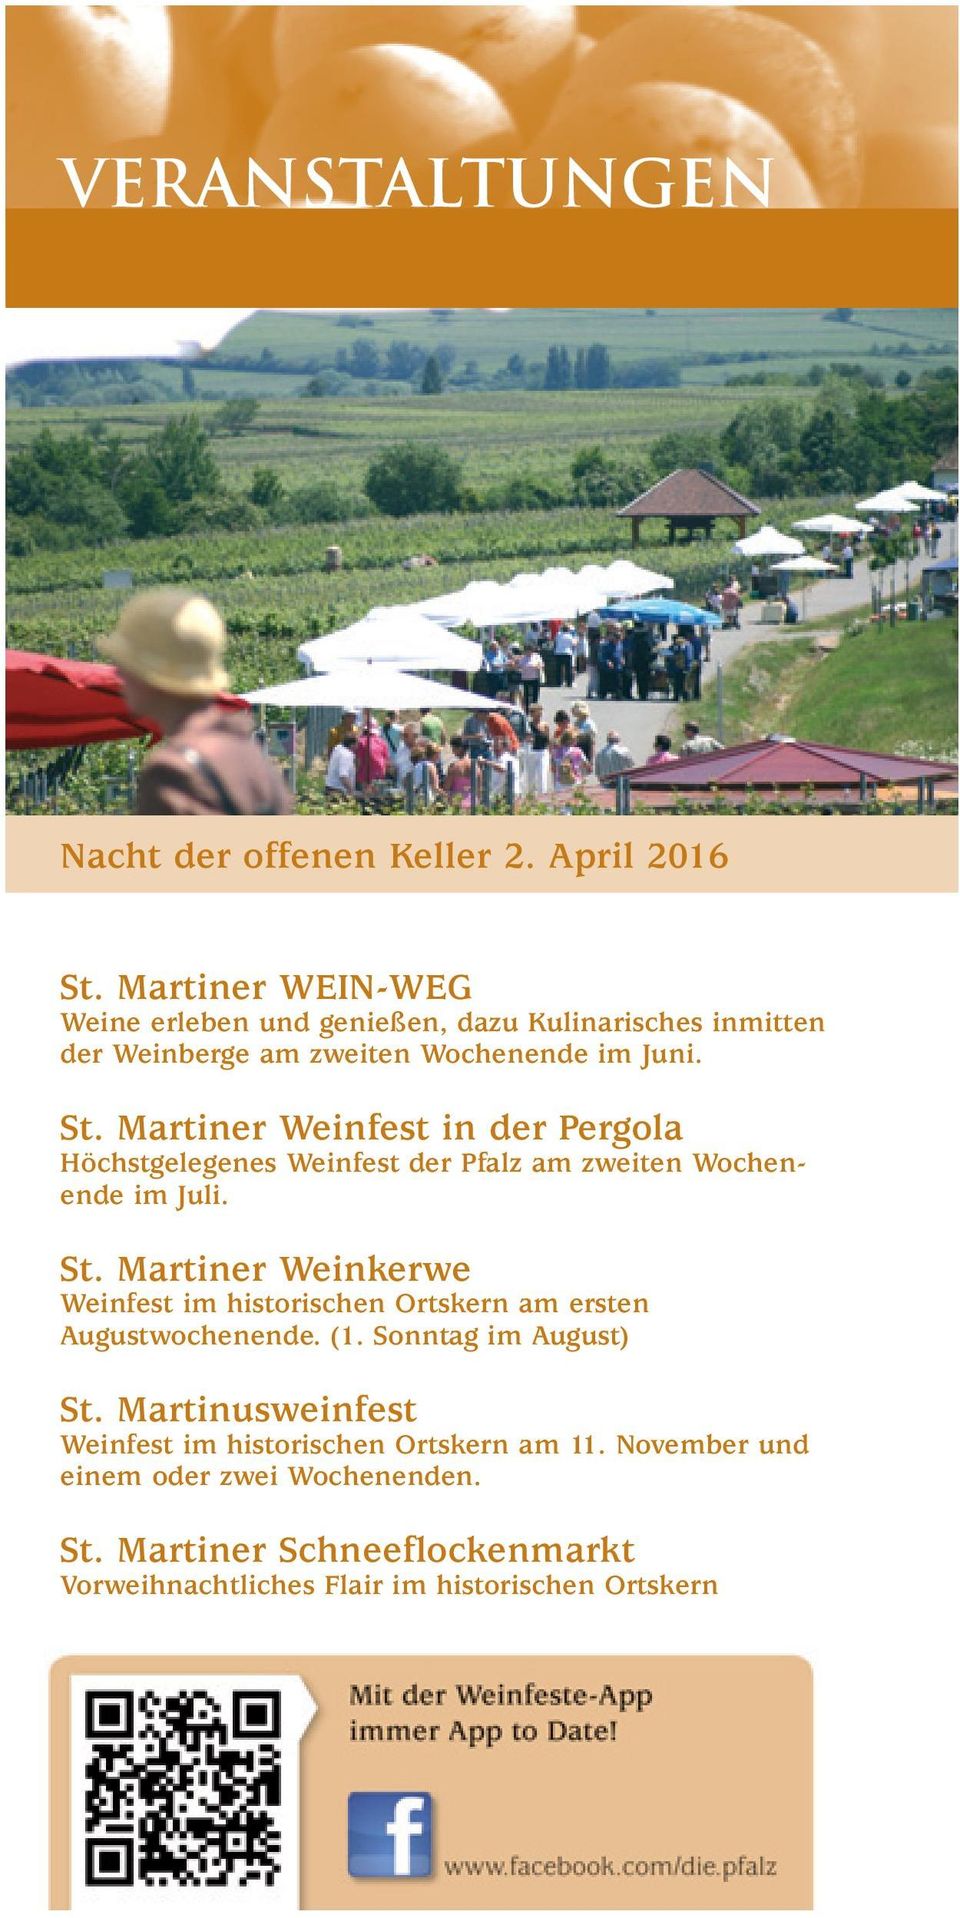 Martiner Weinfest in der Pergola Höchstgelegenes Weinfest der Pfalz am zweiten Wochenende im Juli. St.